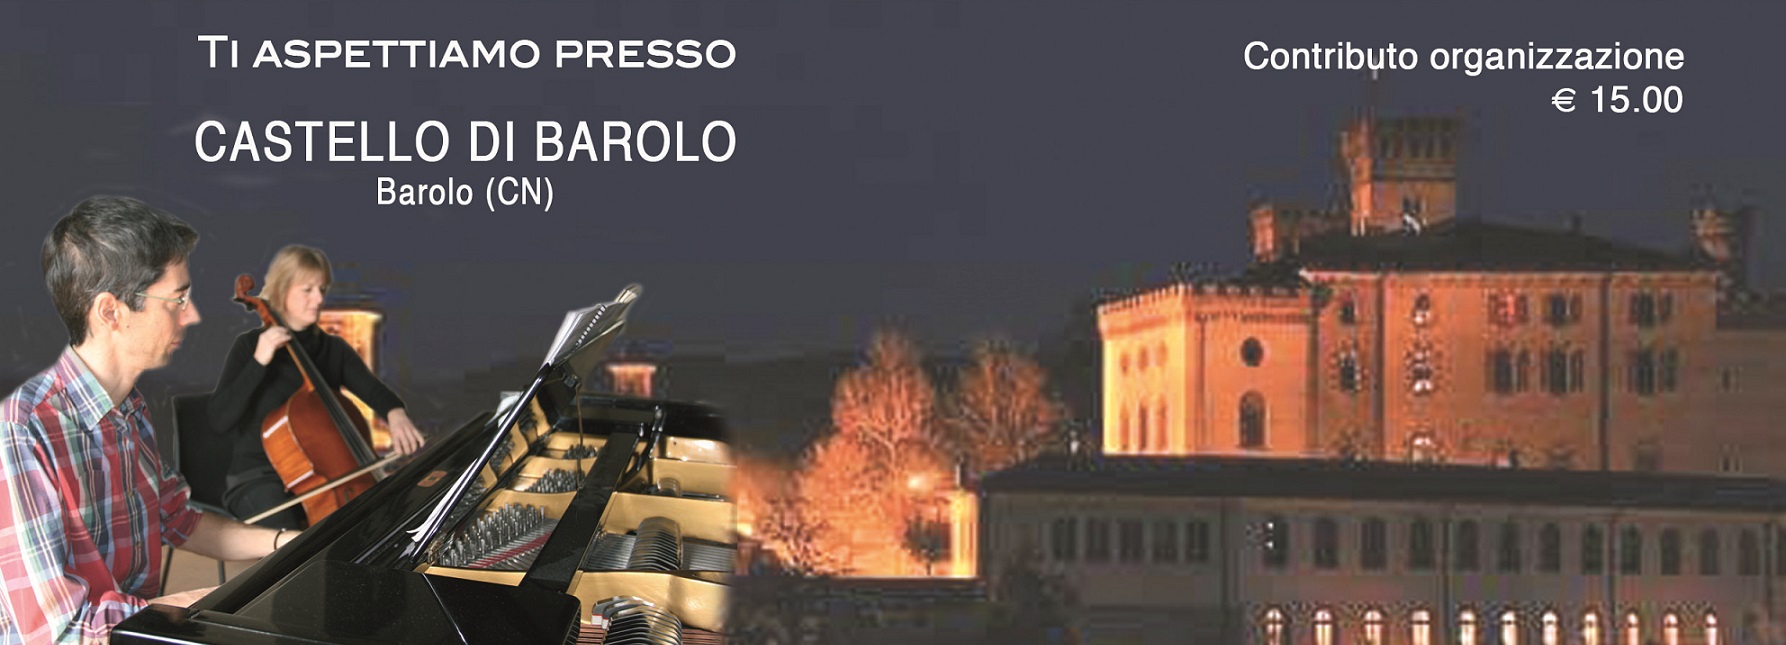 19 settembre: Toso e Borsetti per Wingprinting al Castello di Barolo